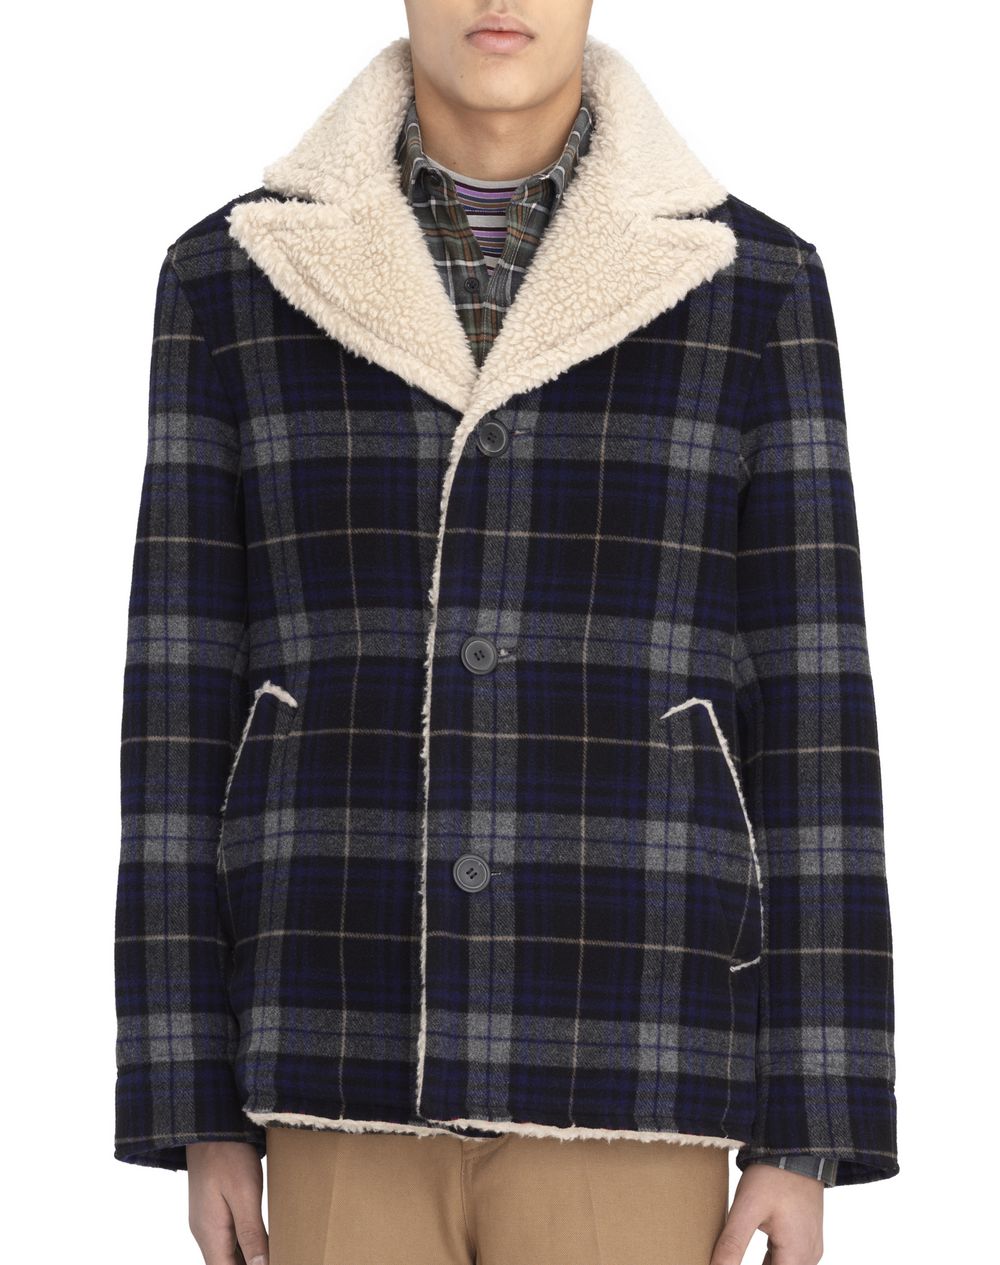 Lanvin FUR LINED WOOL COAT, Outerwear Men | Lanvin Online Store